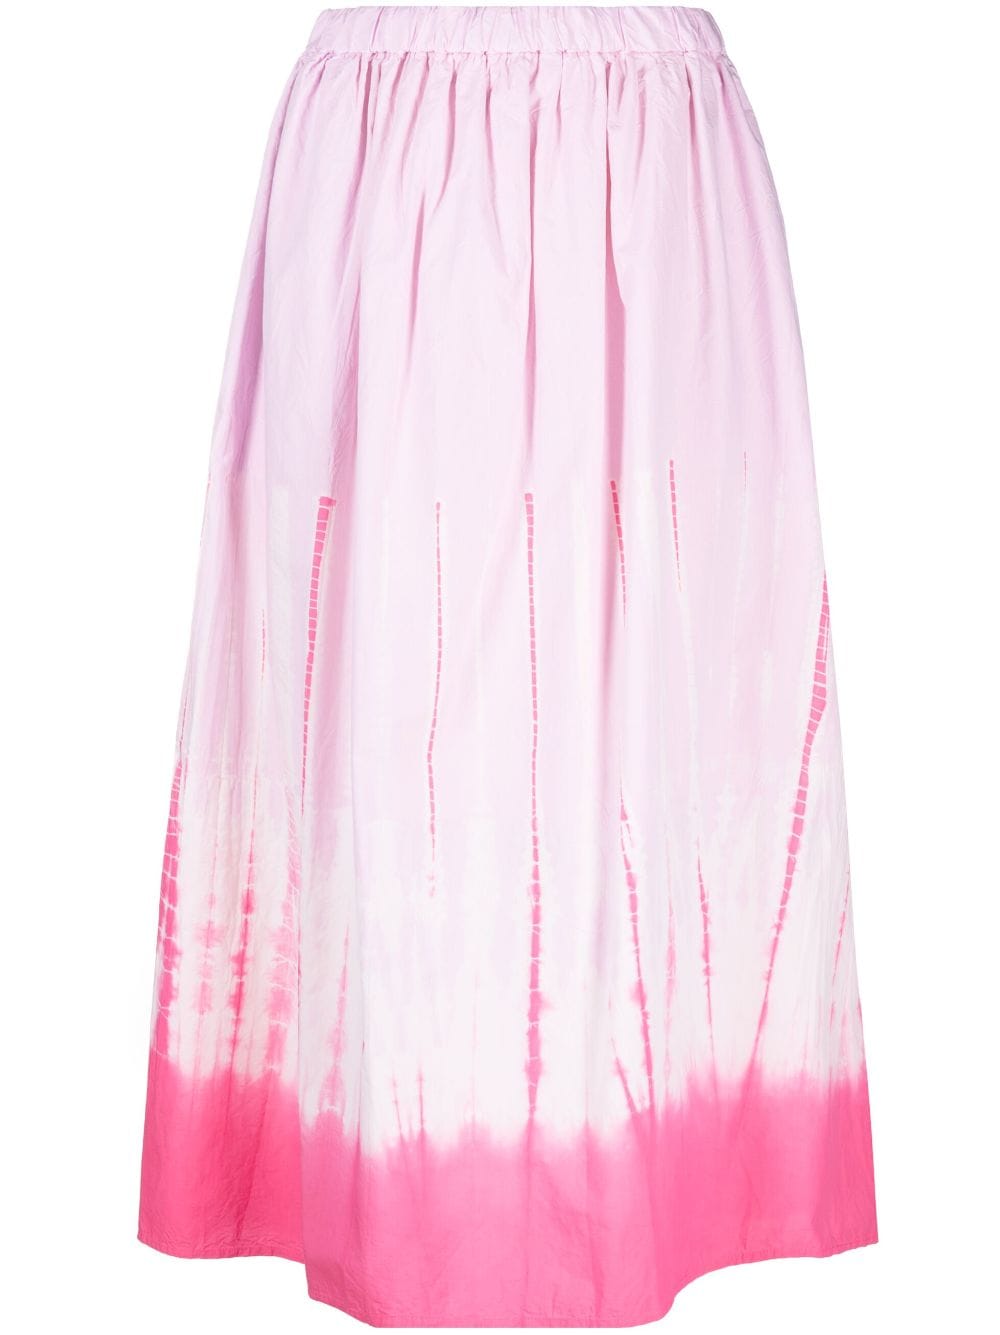 Suzusan Shibori cotton skirt - Pink von Suzusan